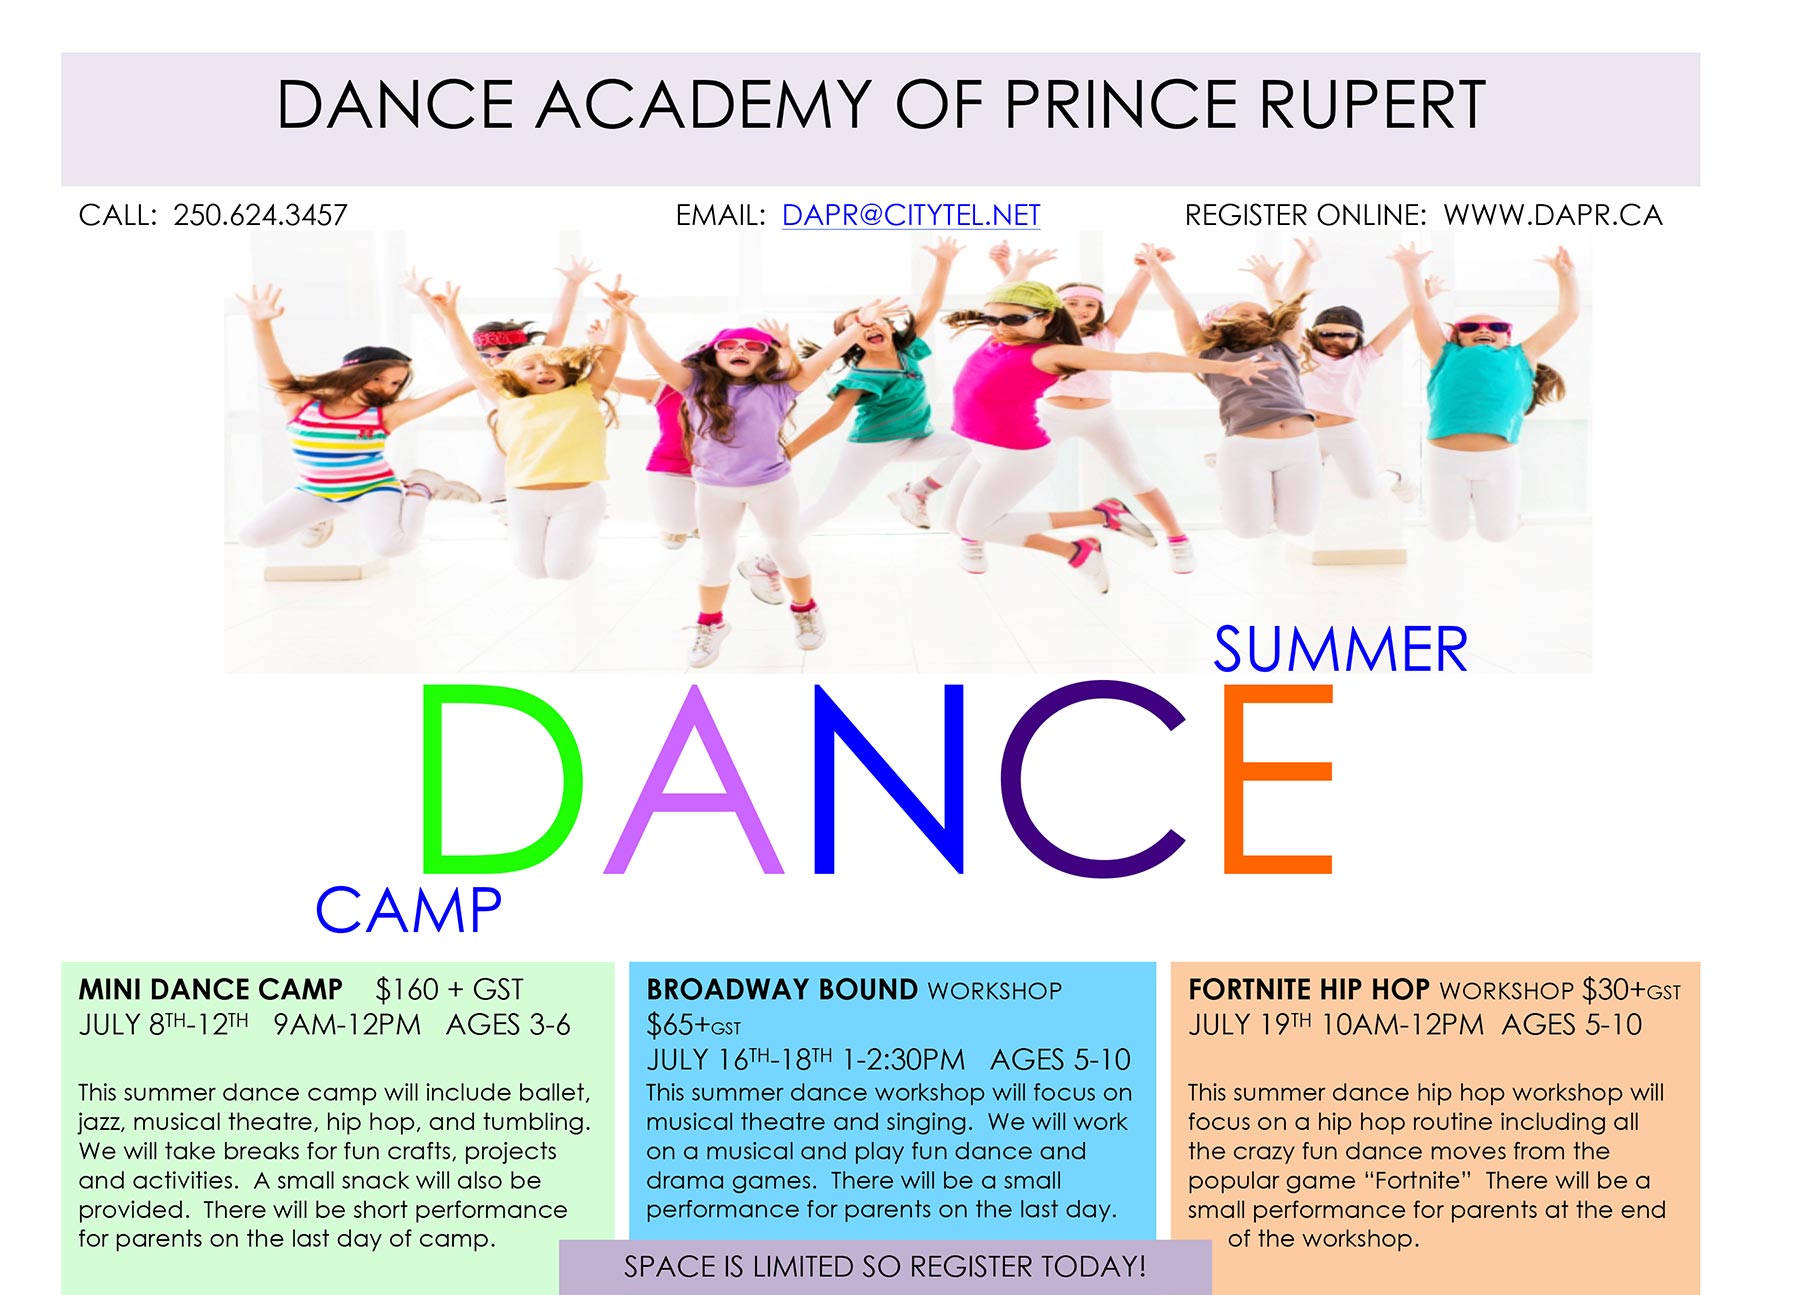 DAPR Summer Dance Camps in Prince Rupert